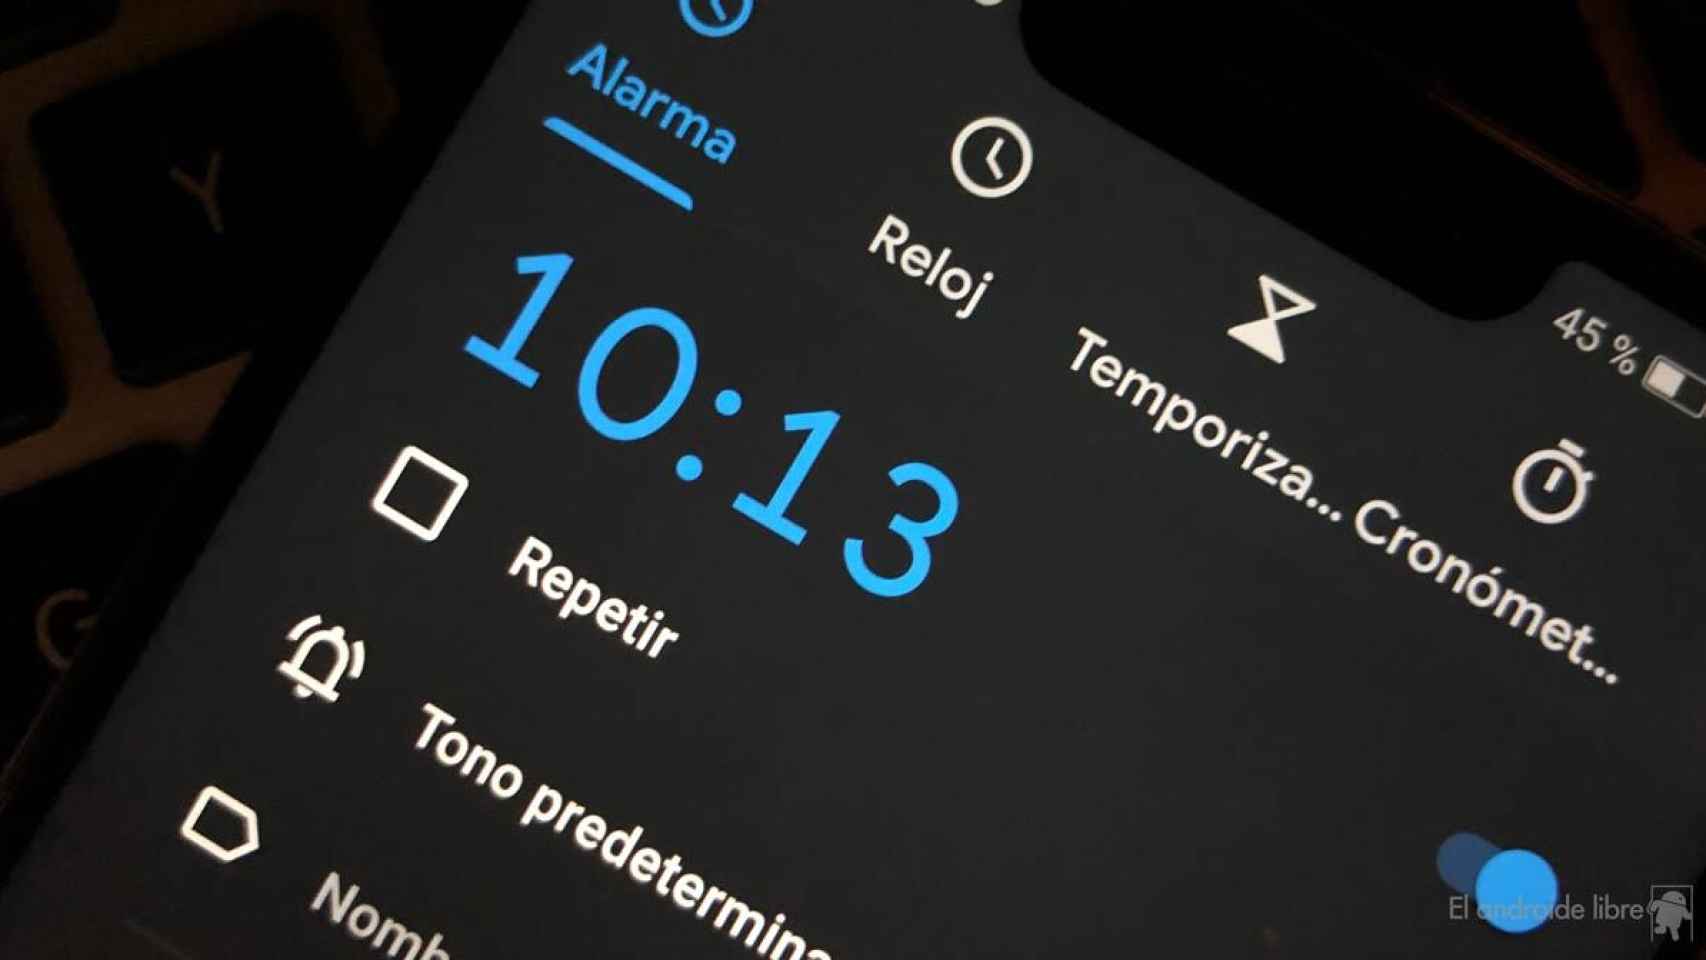 Un despertador inteligente barato y con Google Assistant: no te